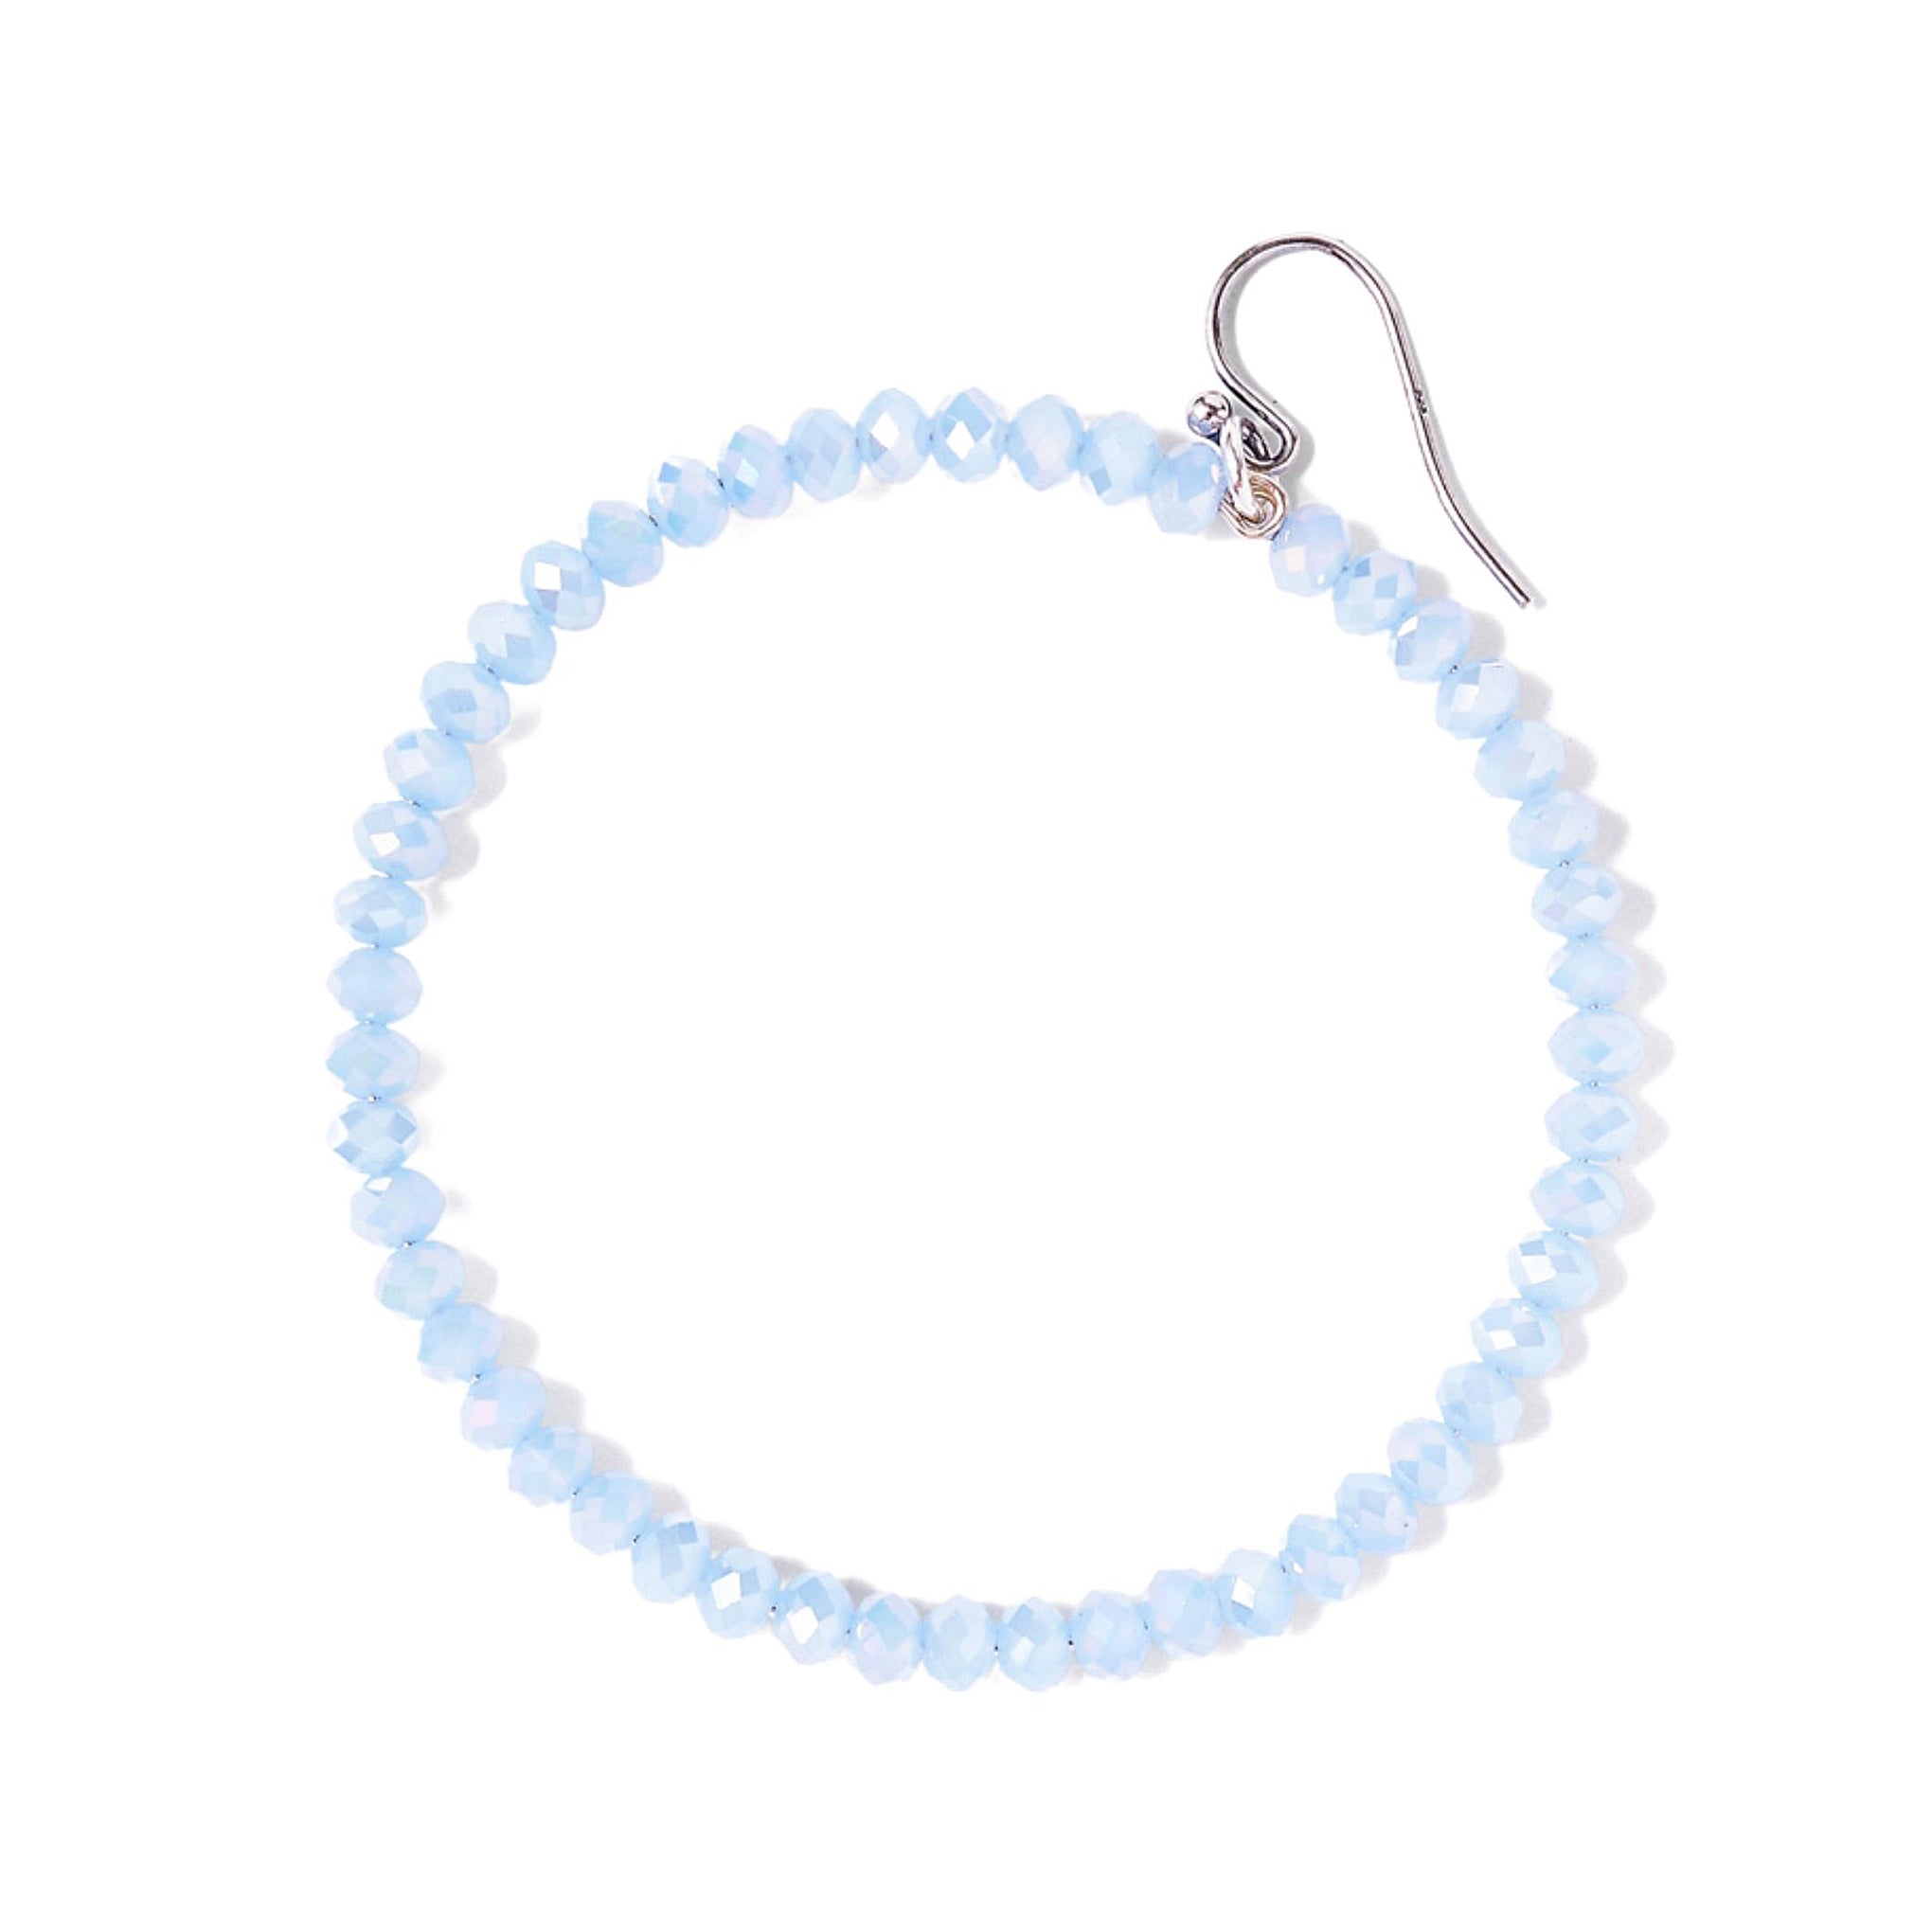 Chan Luu 2.25 Inch Silver Hoop Earrings in Periwinkle Blue Crystals